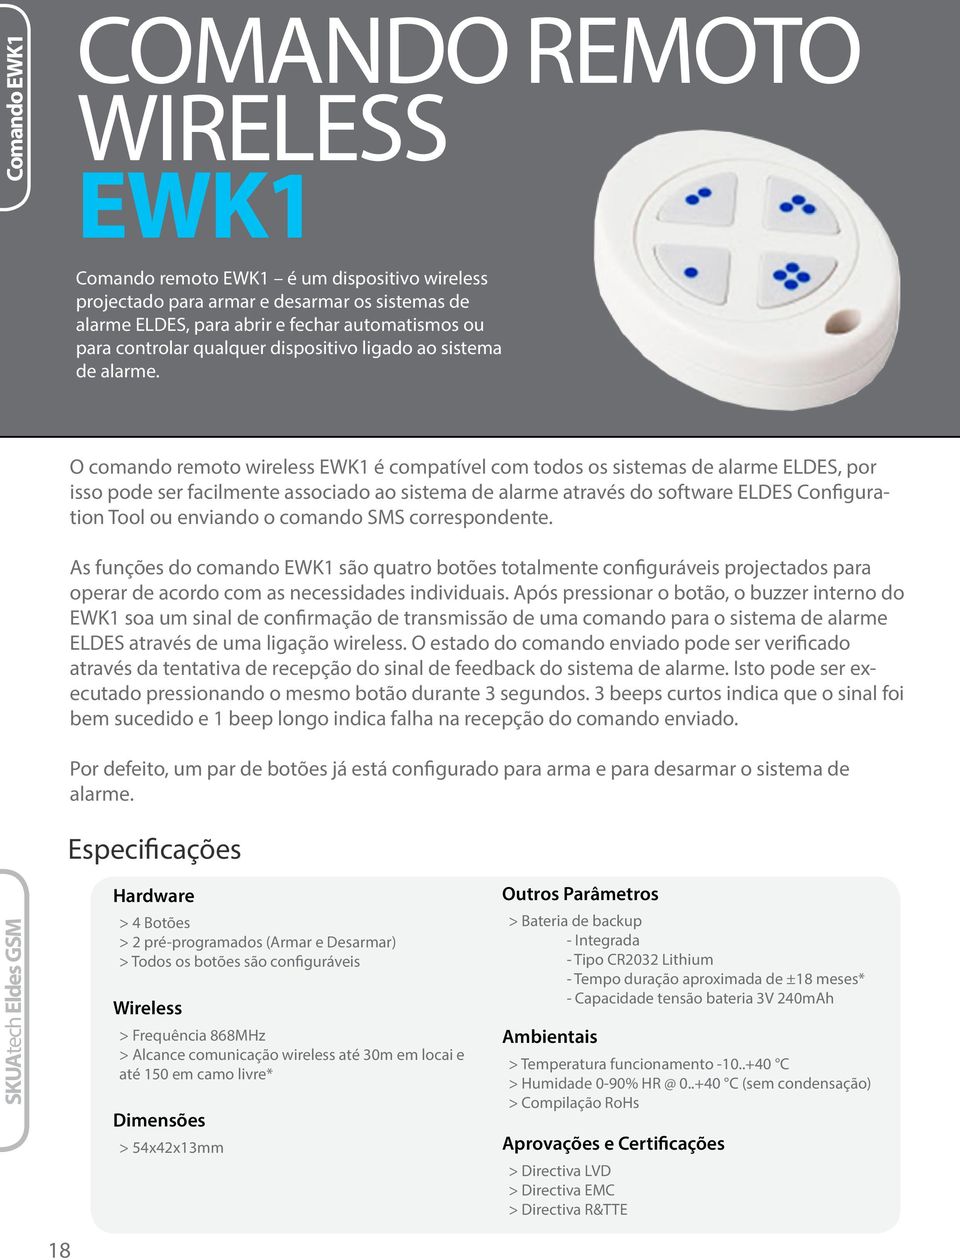 O comando remoto wireless EWK1 é compatível com todos os sistemas de alarme ELDES, por isso pode ser facilmente associado ao sistema de alarme através do software ELDES Configuration Tool ou enviando